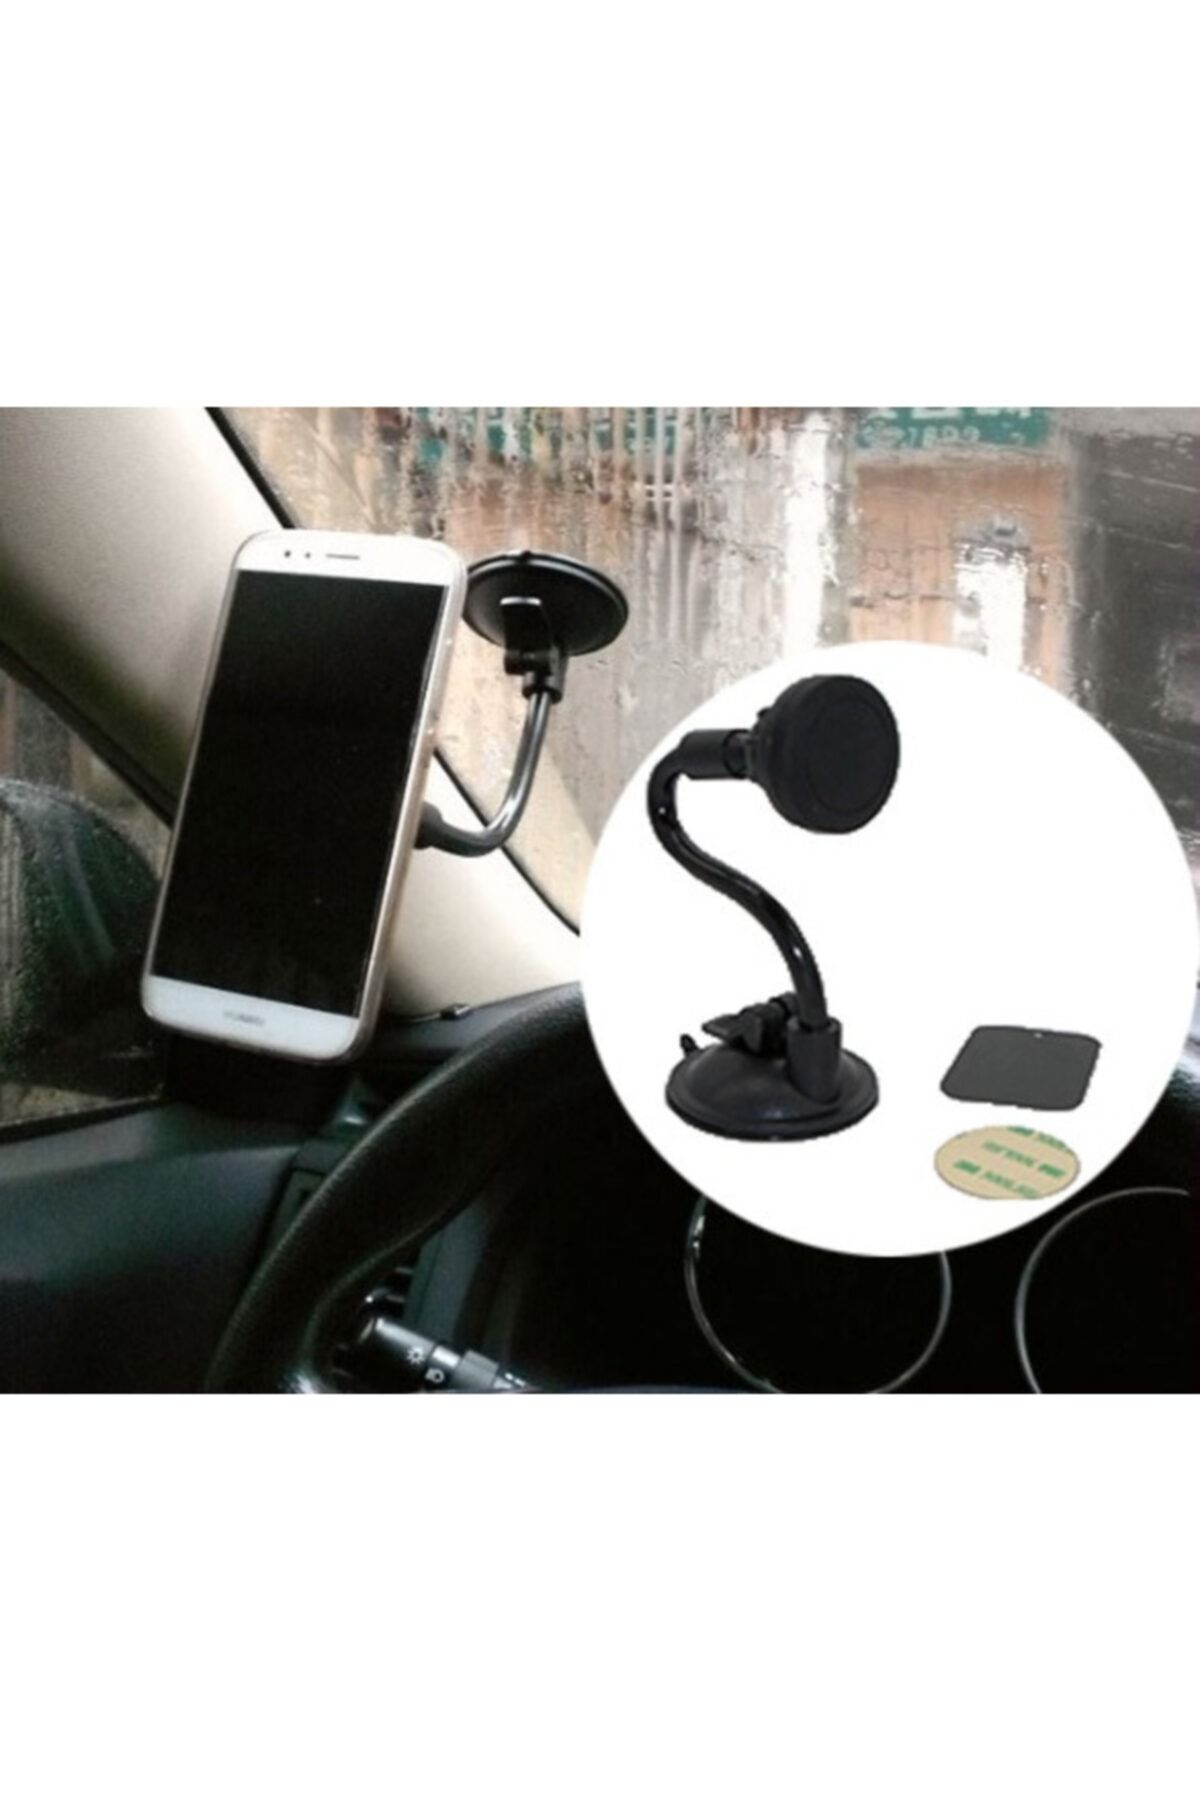 Çokuygunuz Vantuzlu Araç Içi Telefon Tablet Navigasyon Tutucu Tutma Aparatı